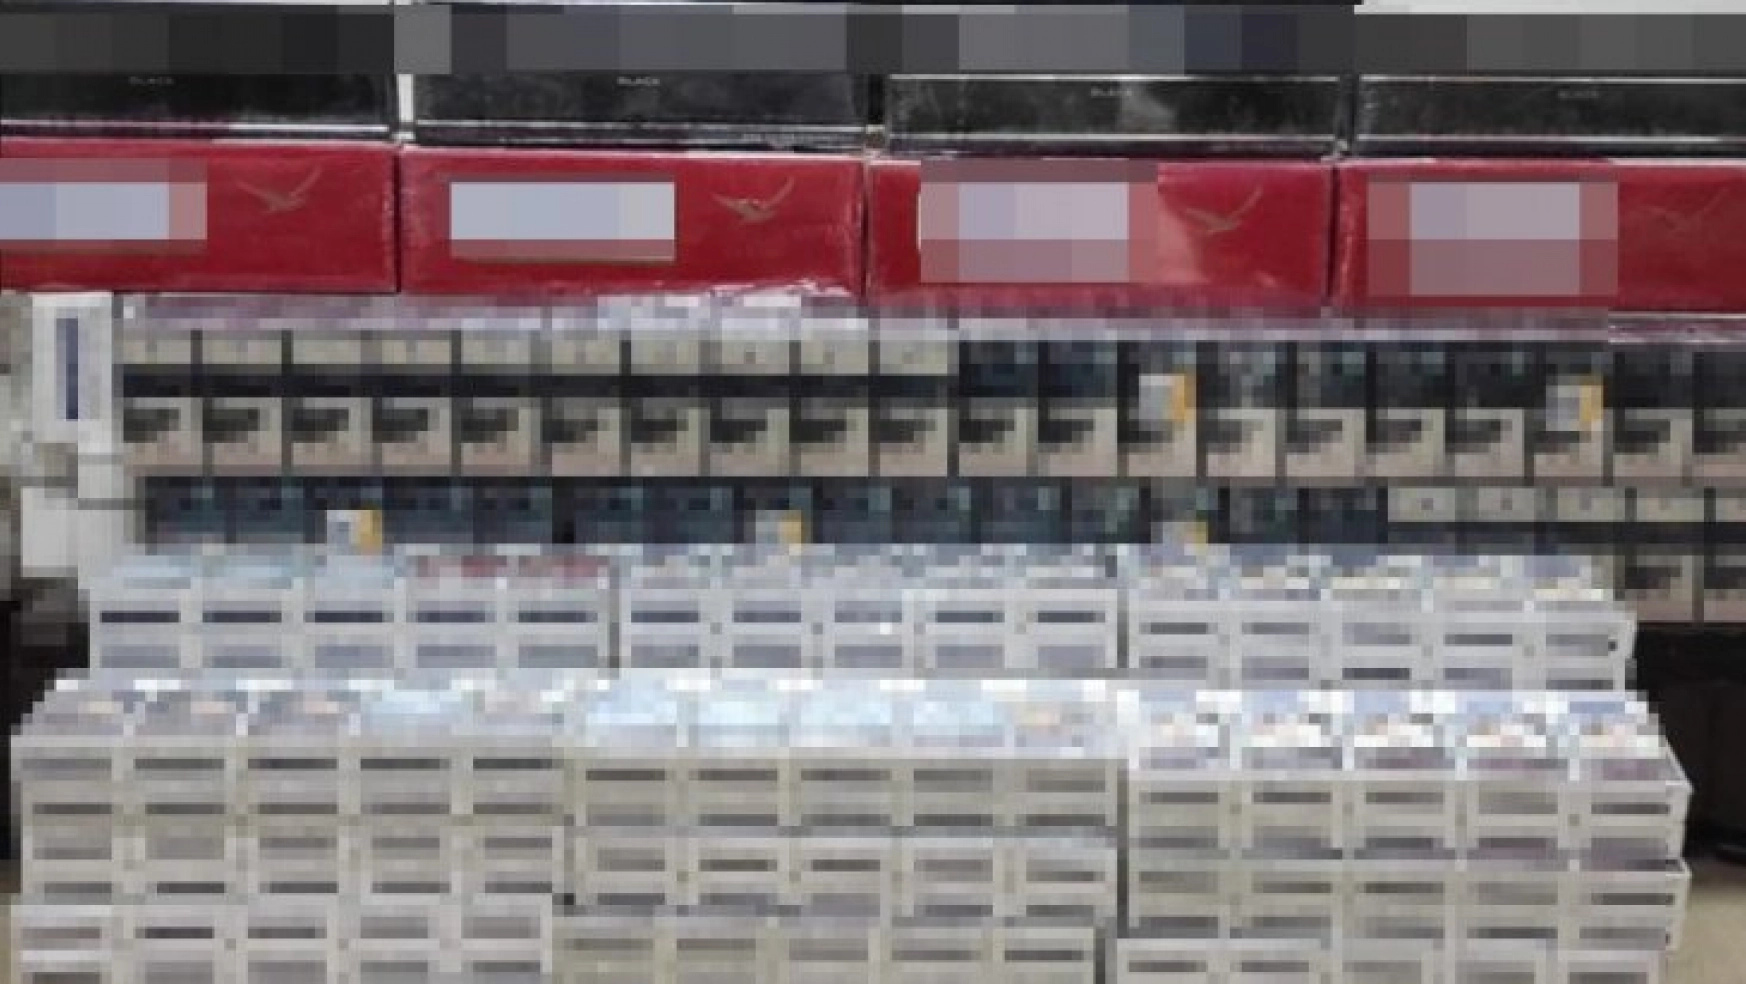 Ağrı'da tüp içerisine gizlenmiş bin 380 paket kaçak sigara ele geçirildi